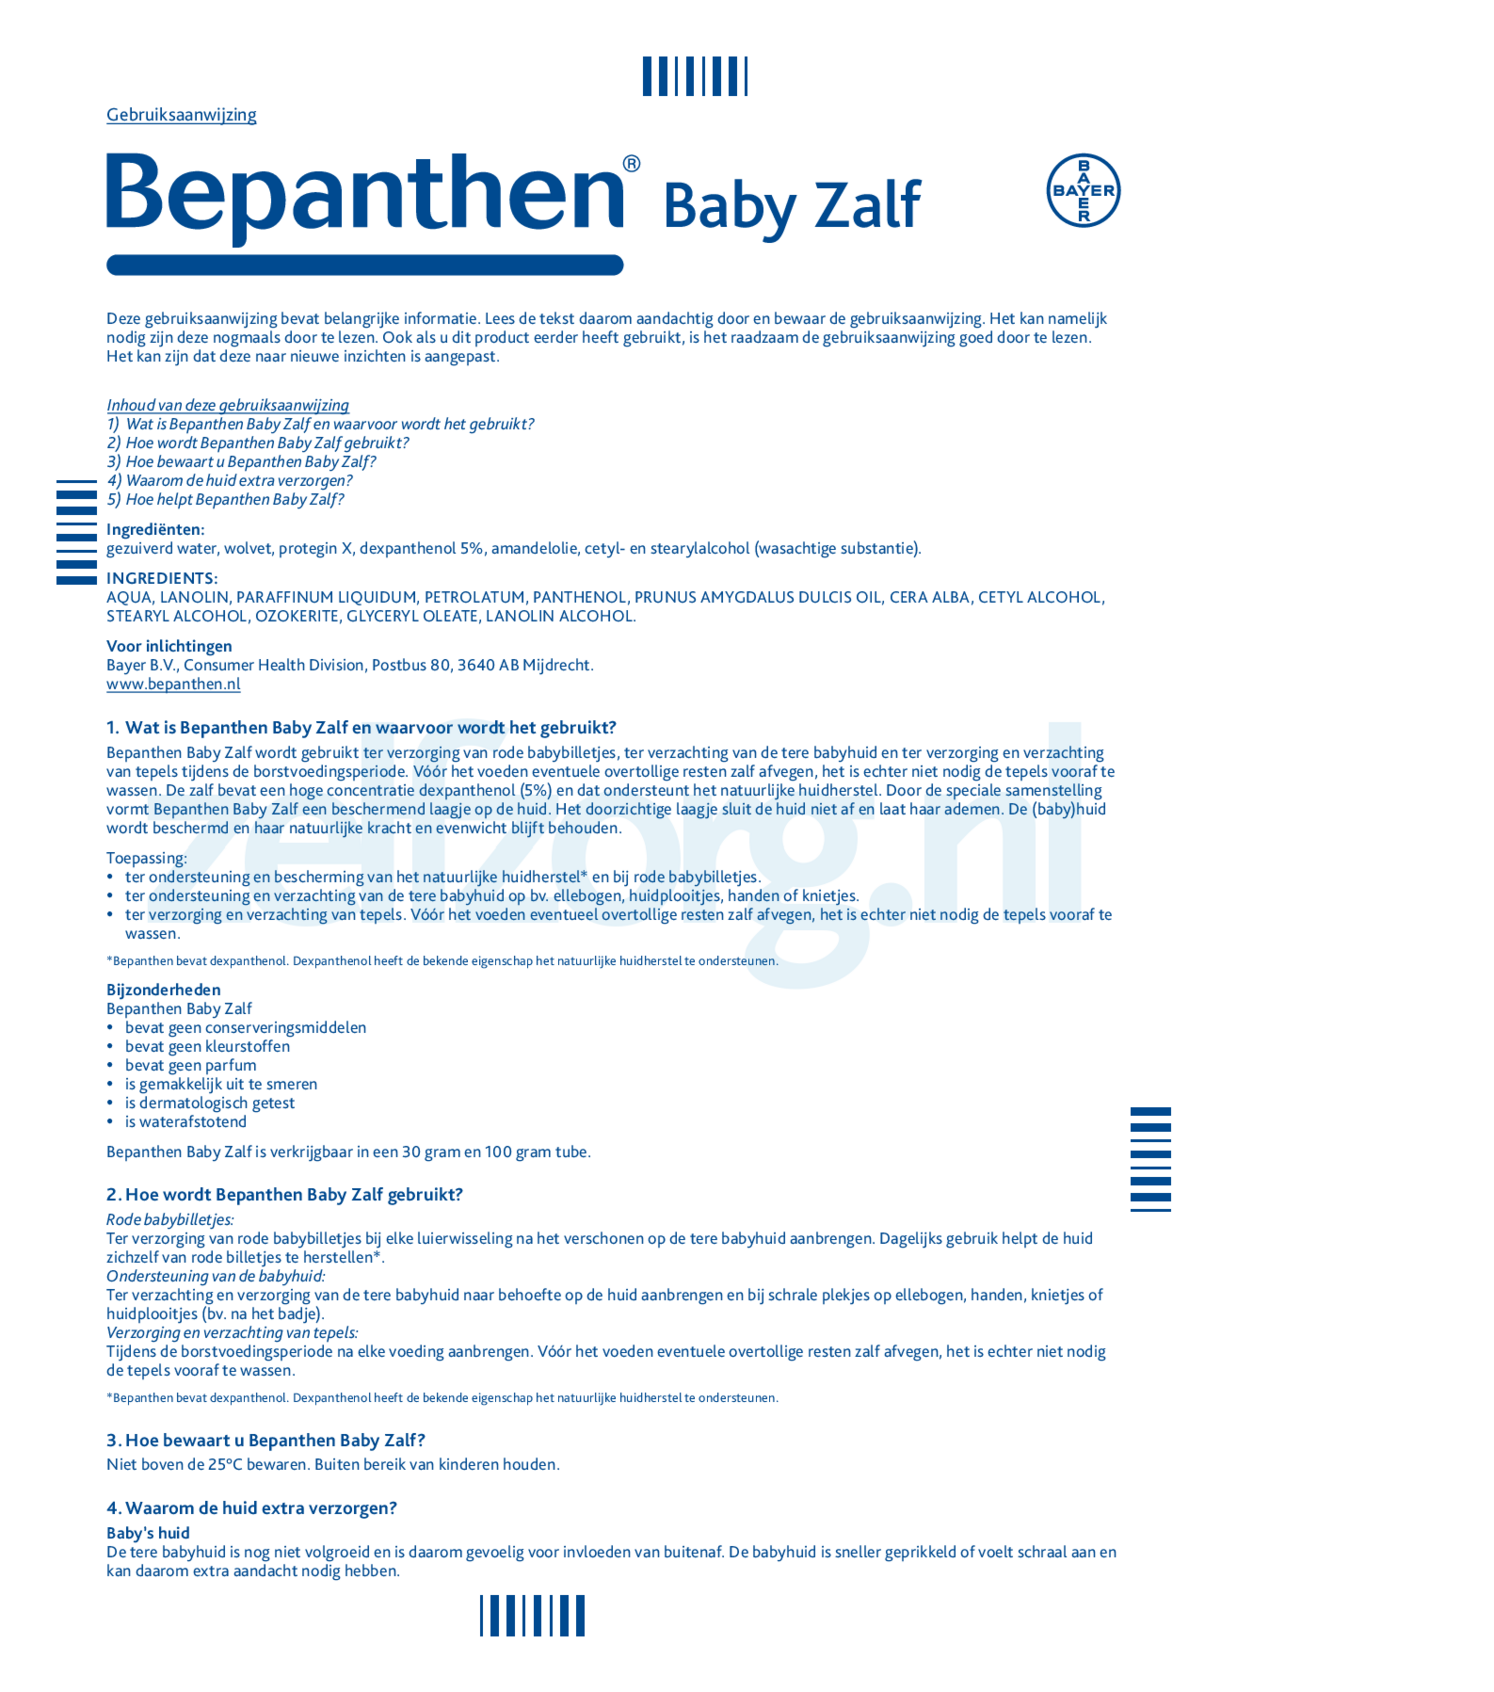 Baby Zalf afbeelding van document #1, gebruiksaanwijzing